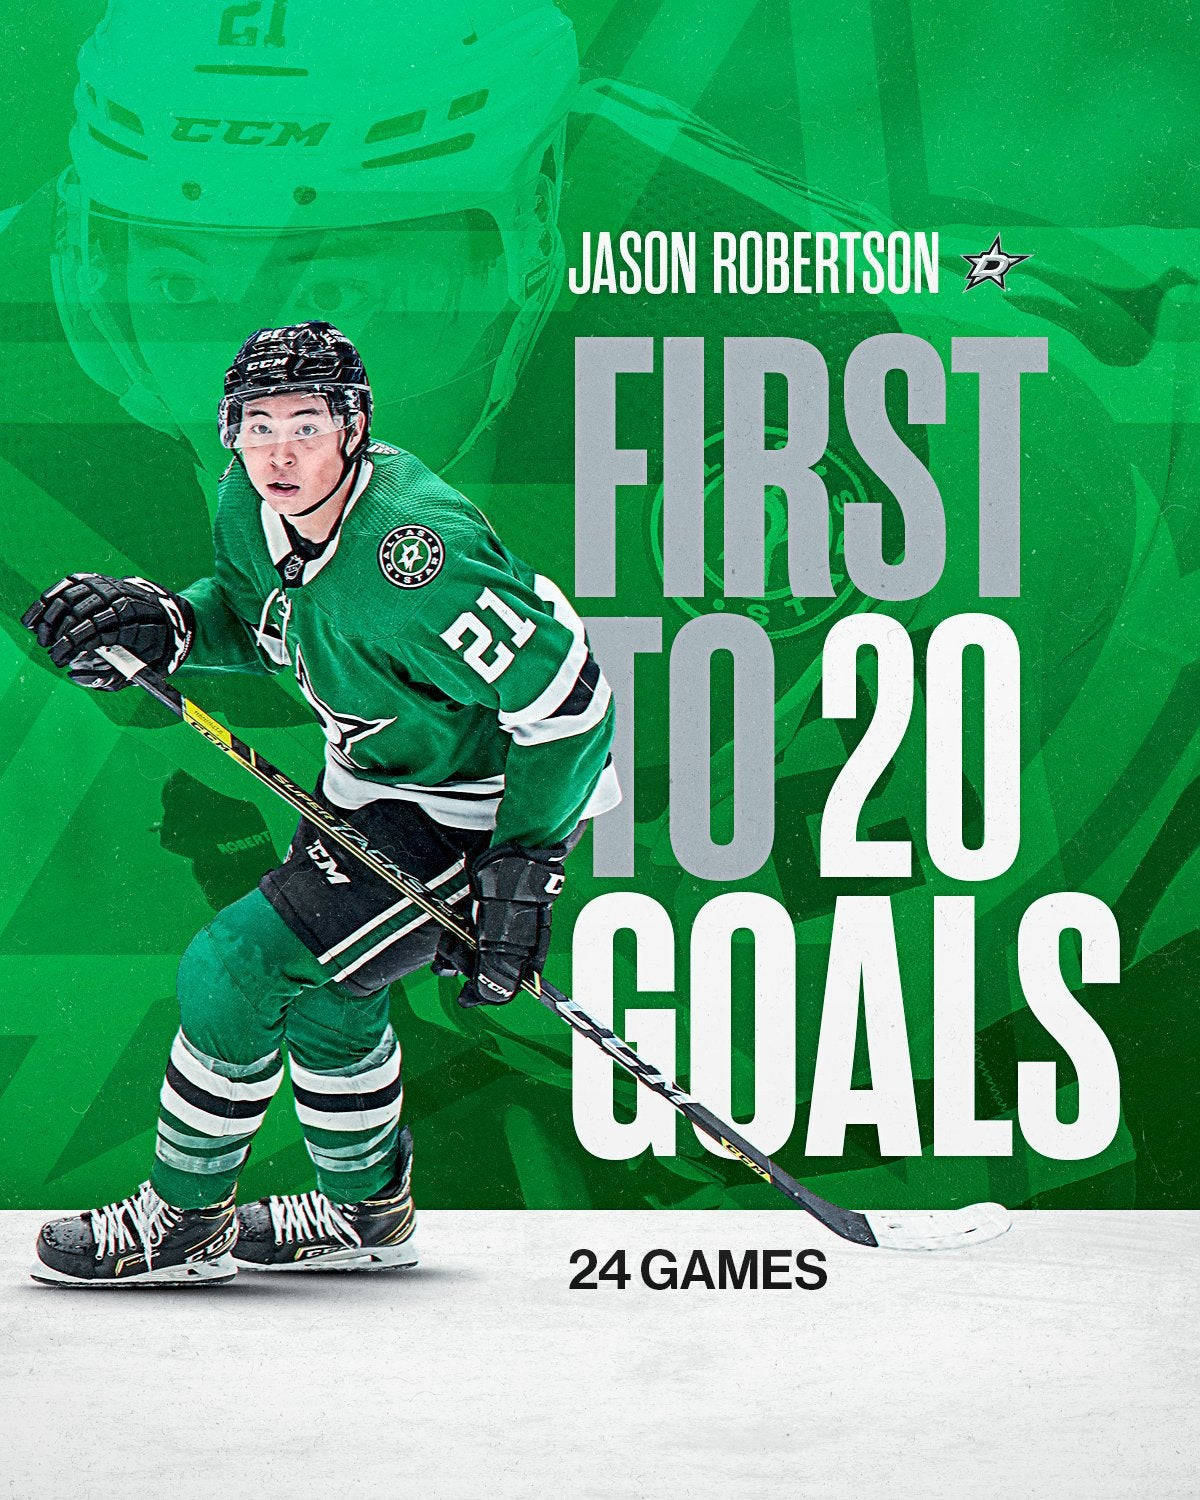 Jason Robertson First To 20 Goals Poster Wallpaper